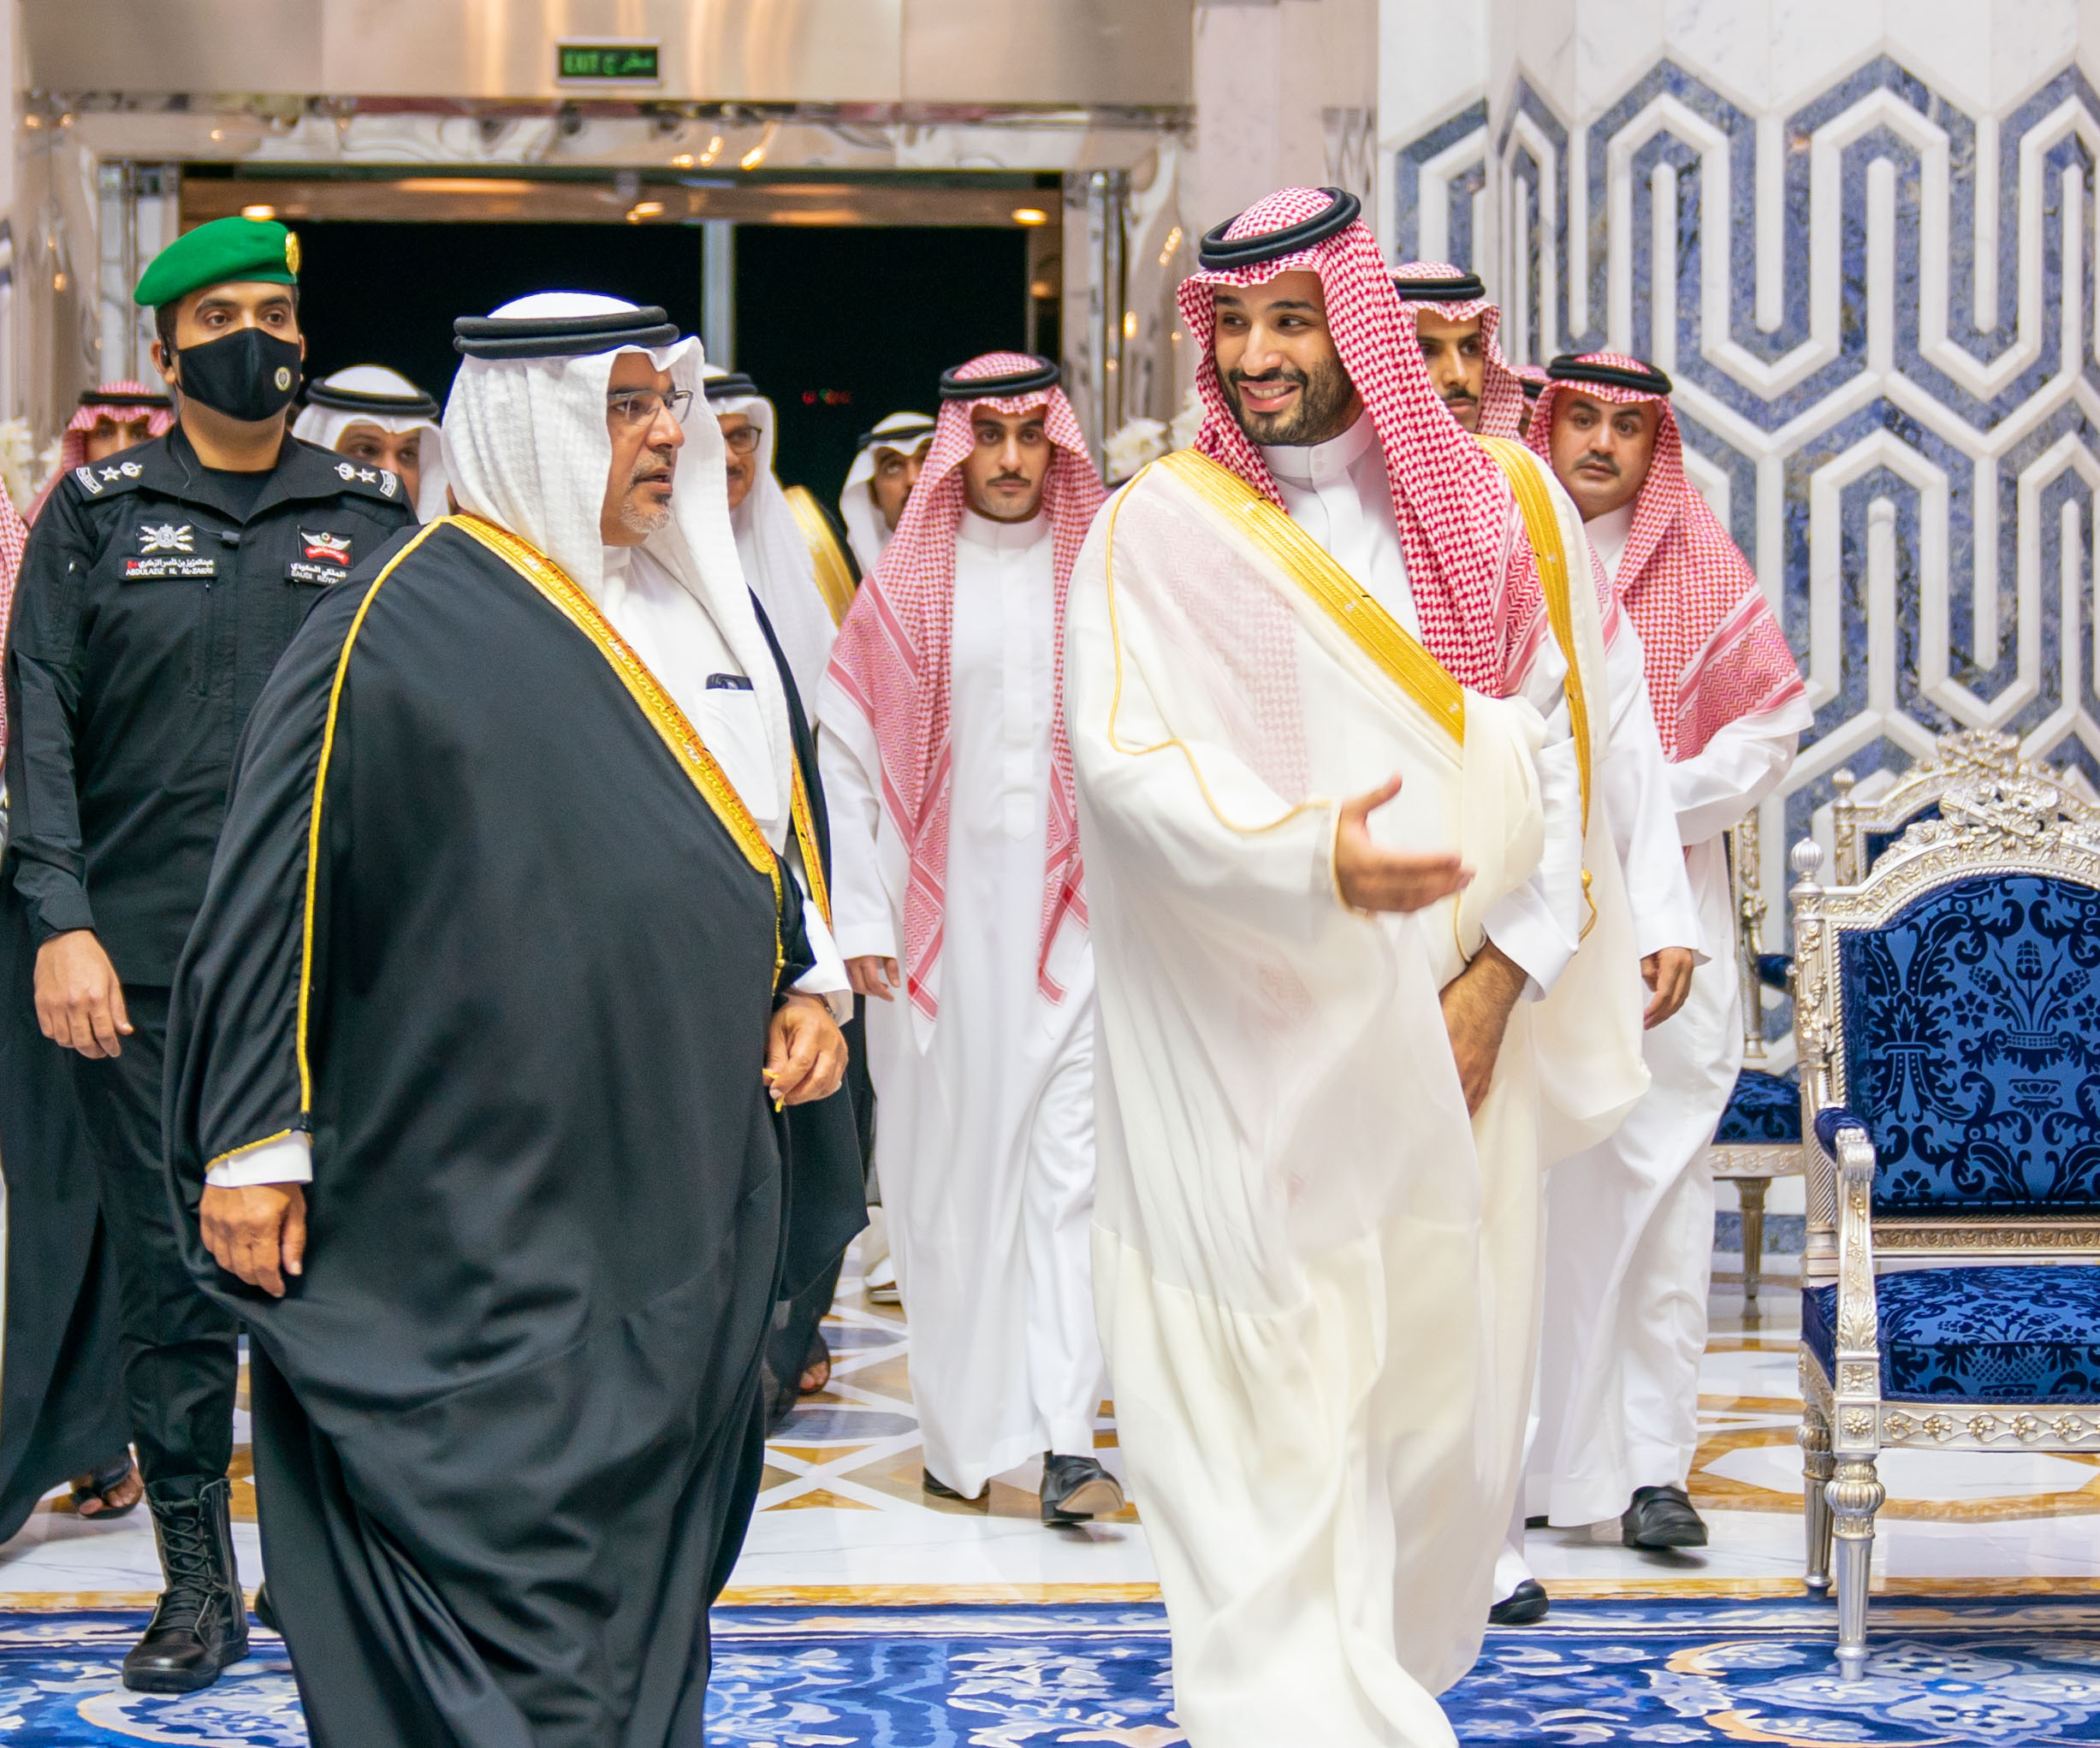  رئيس مجلس الوزراء البحرين يصل للمملكة العربية السعودية لحضور قمة جدة (بنا)